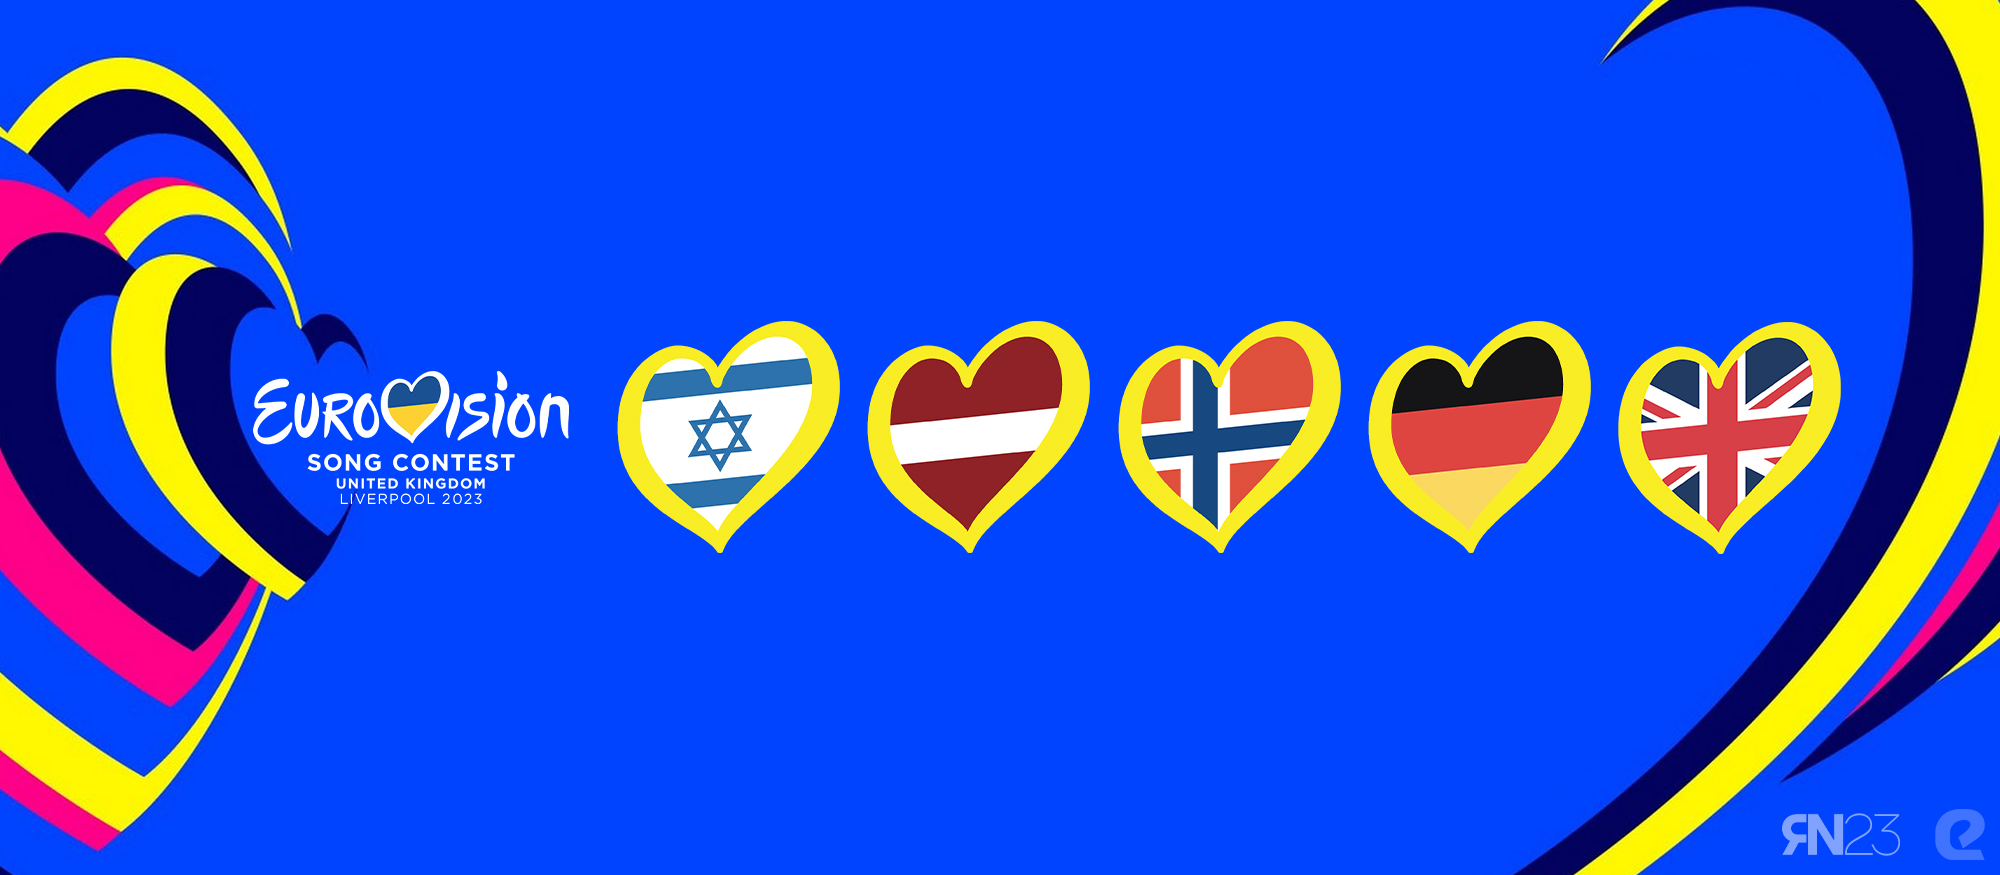 Razmišljamo naglas - Eurosong 2023., Liverpool, Izrae, Latvija, Norveška, Njemačka, Ujedinjeno Kraljevstvo